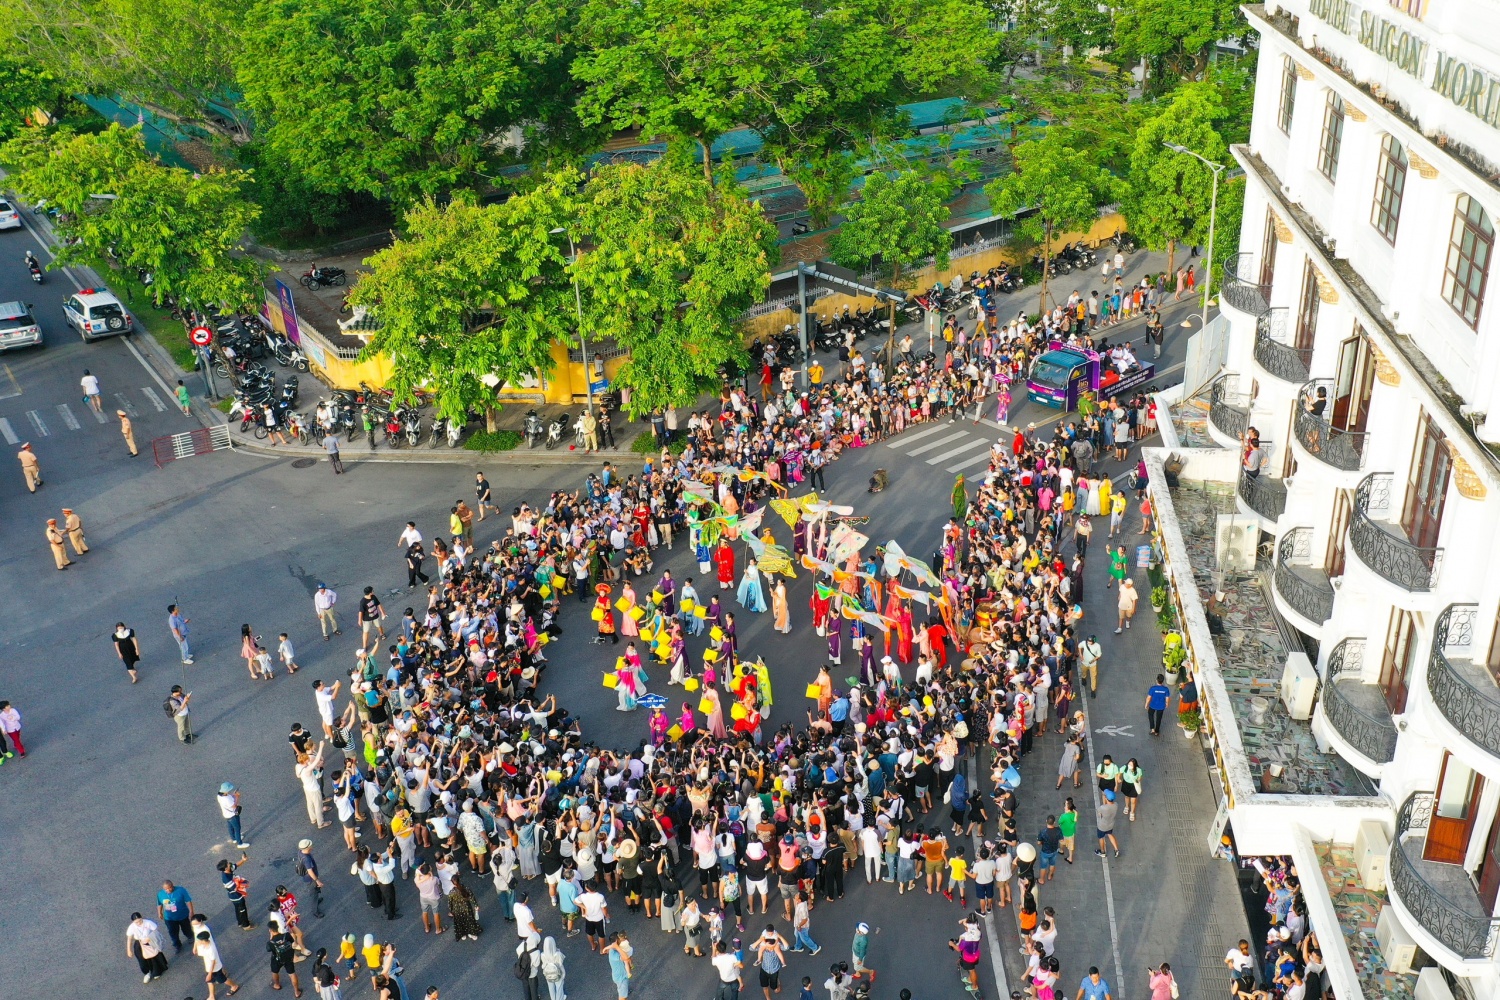 Người dân, du khách đều rất vui khi được hòa mình giữa dòng người đông đúc và không khí lễ hội rộn ràng trong những ngày mùa hè nắng đẹp xứ Huế.